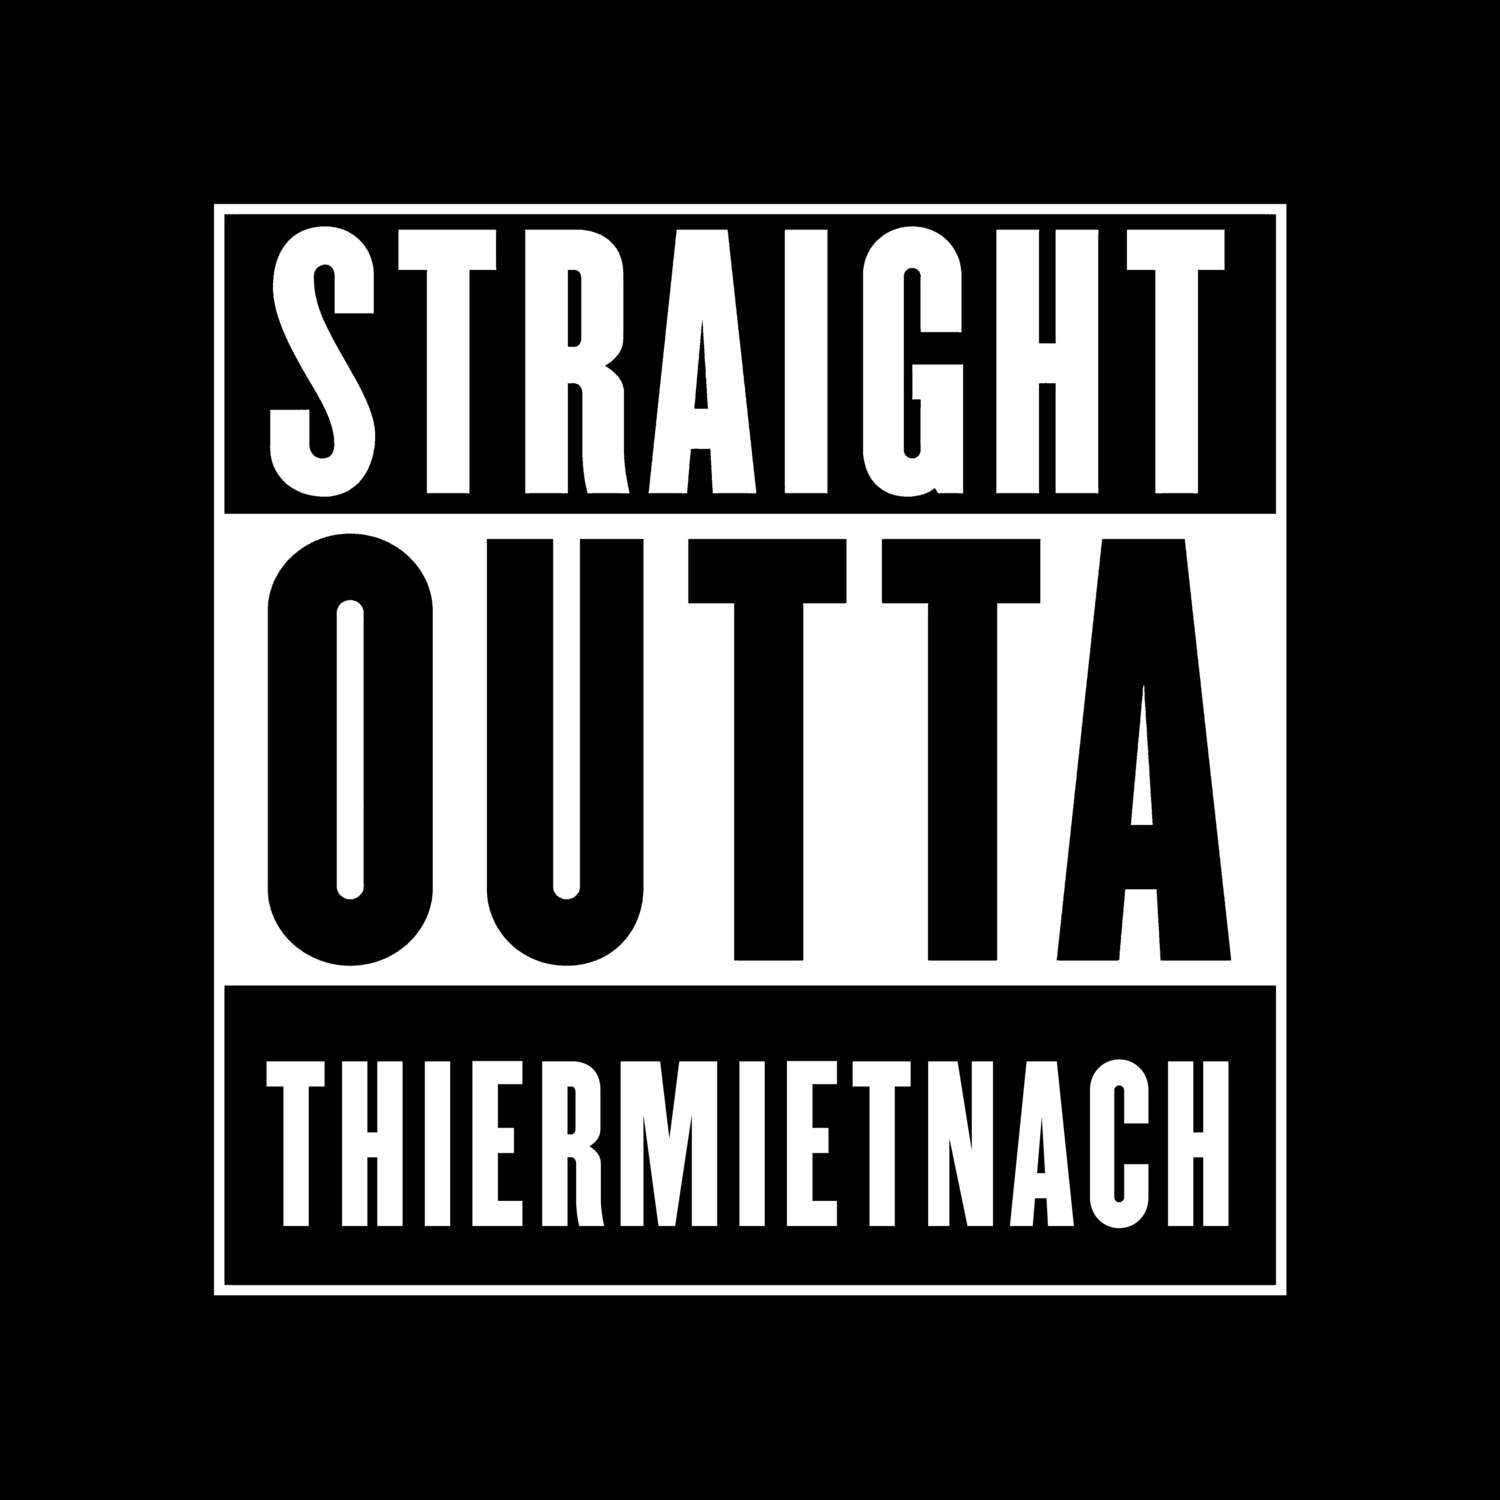 Thiermietnach T-Shirt »Straight Outta«